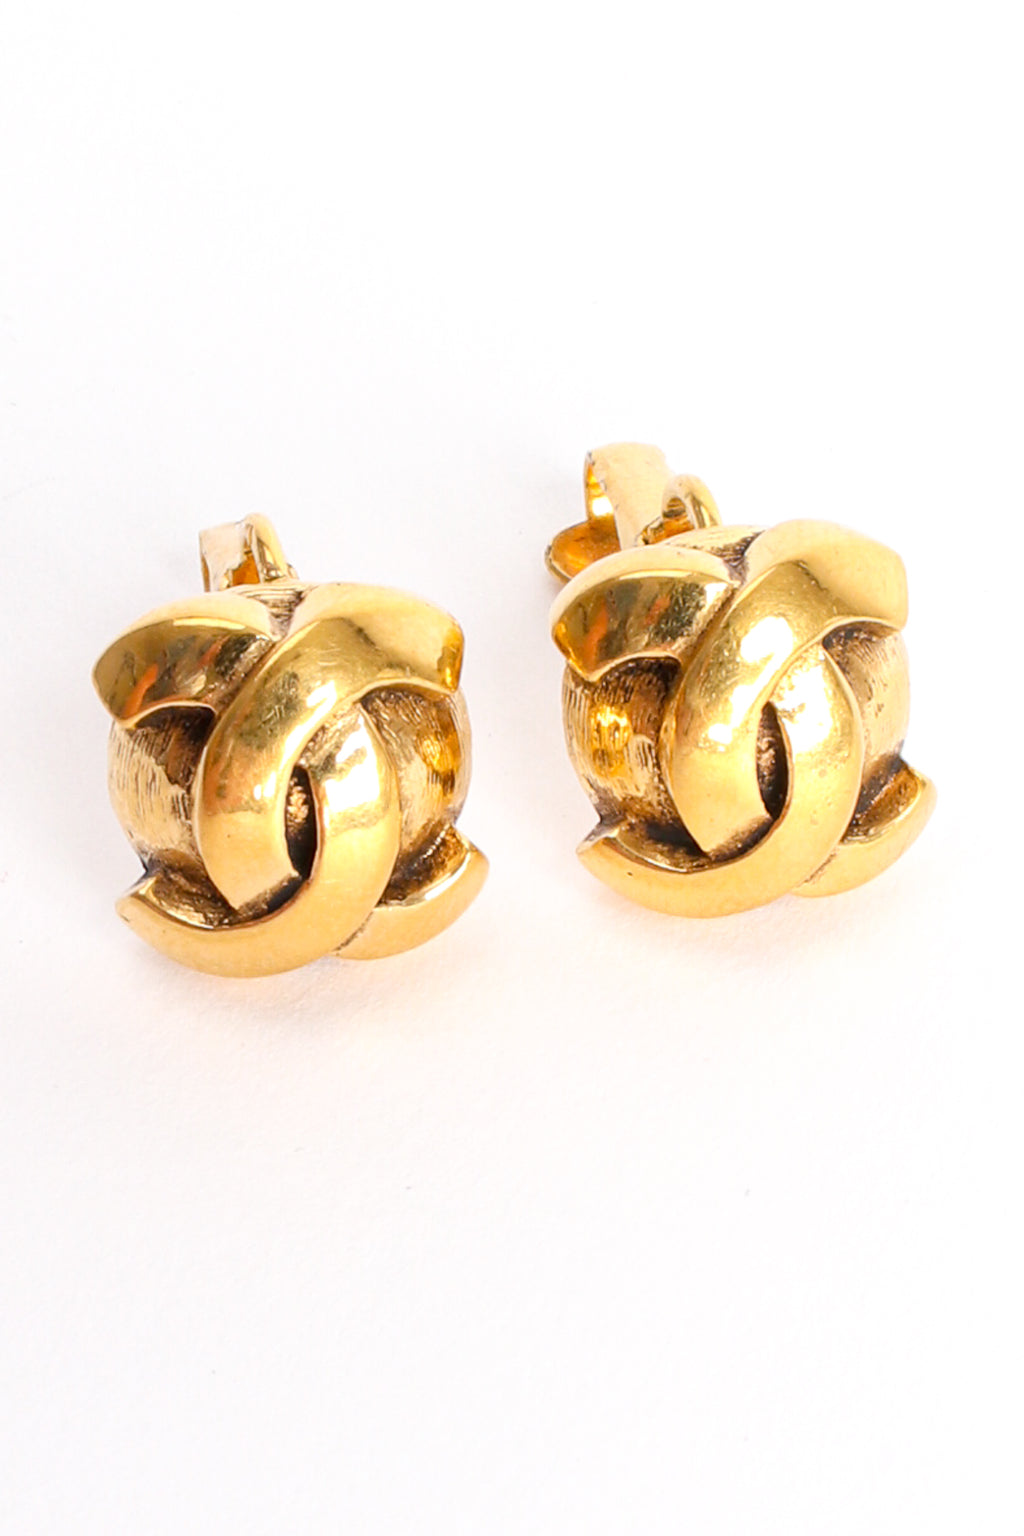 Chanel-Inspired Double C Love Heart Earrings with Diamonds – El blin-blín